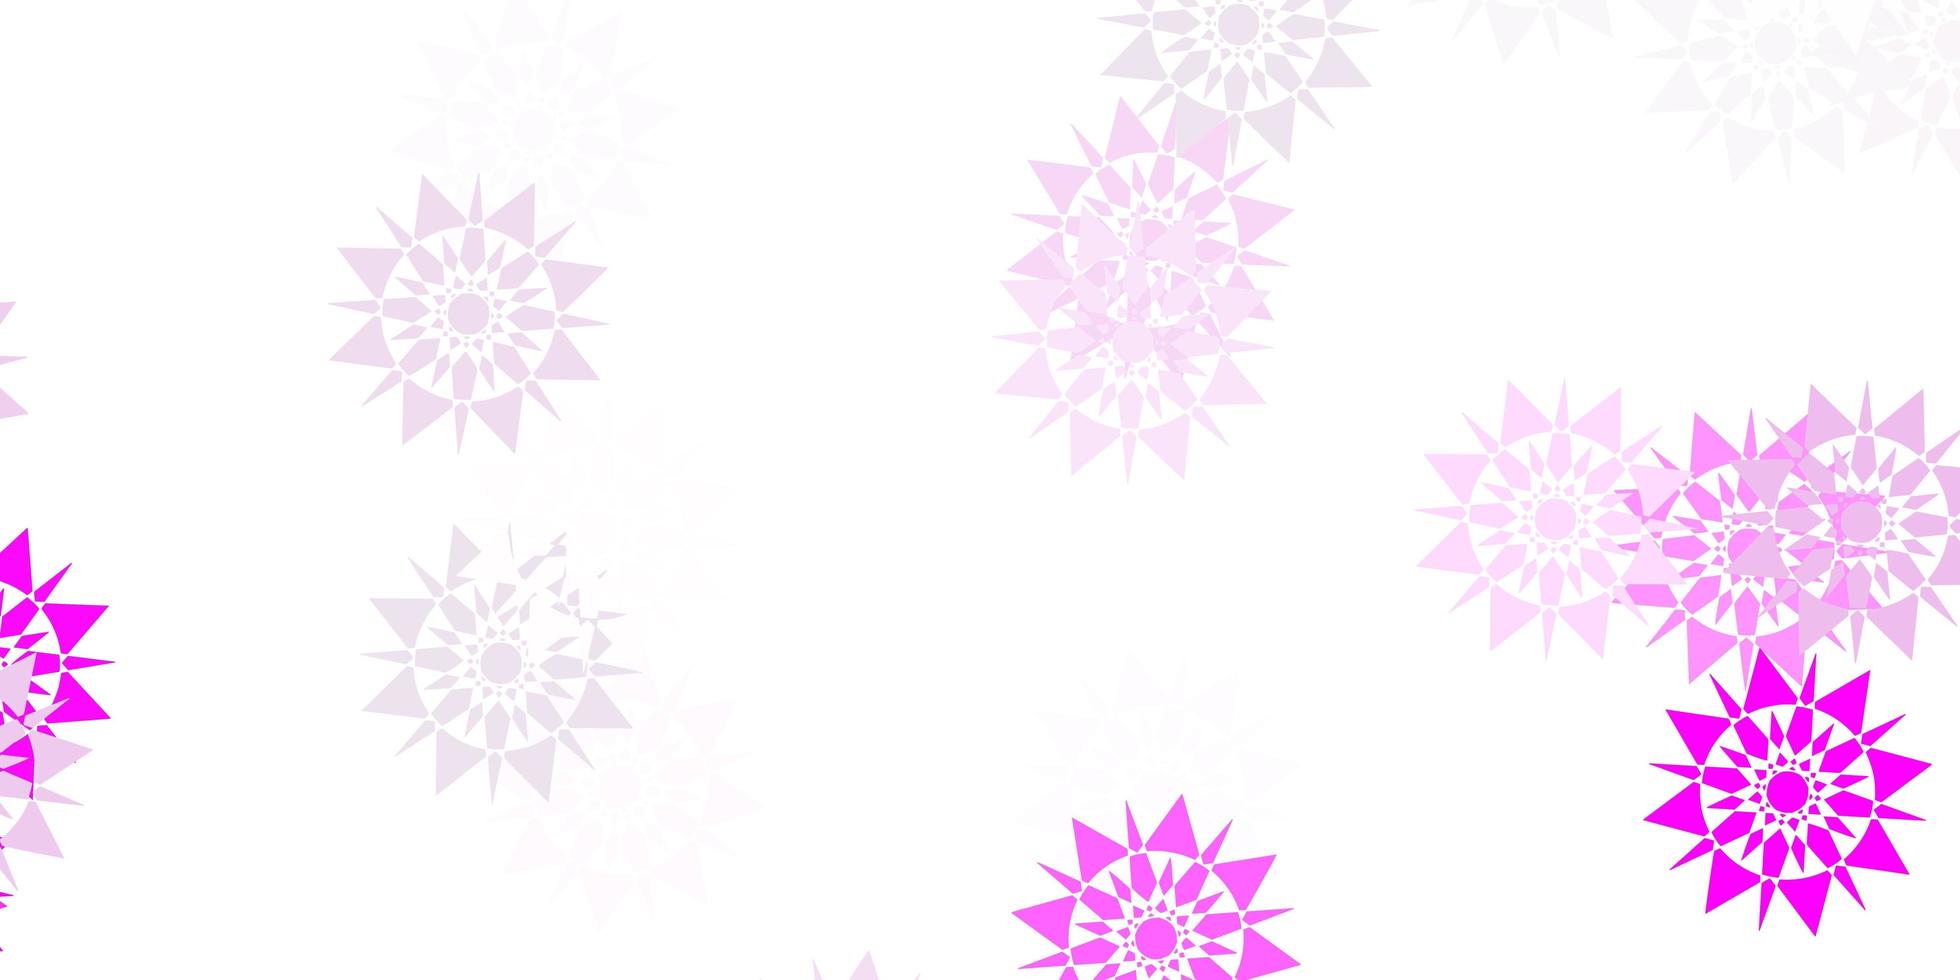 diseño de vector de color púrpura claro con hermosos copos de nieve.